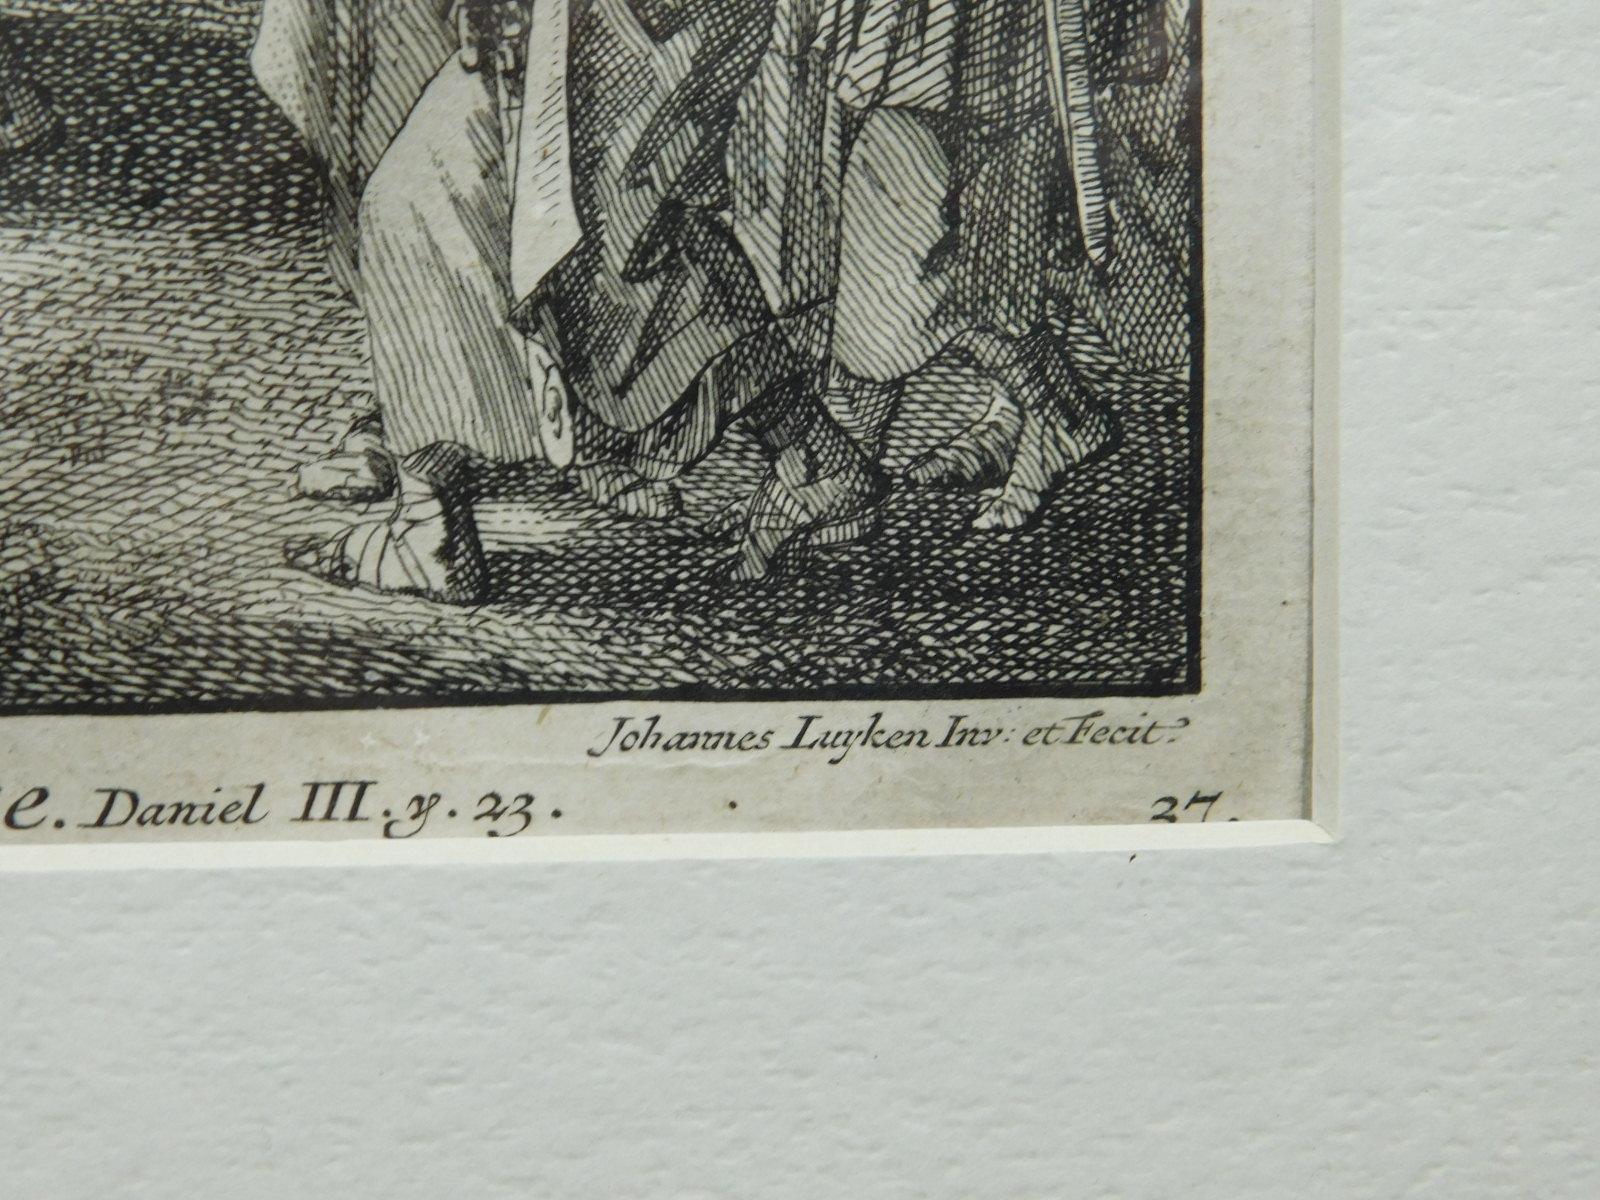 Covens en Mortier after Johannes Luyken: The Fiery Furnace